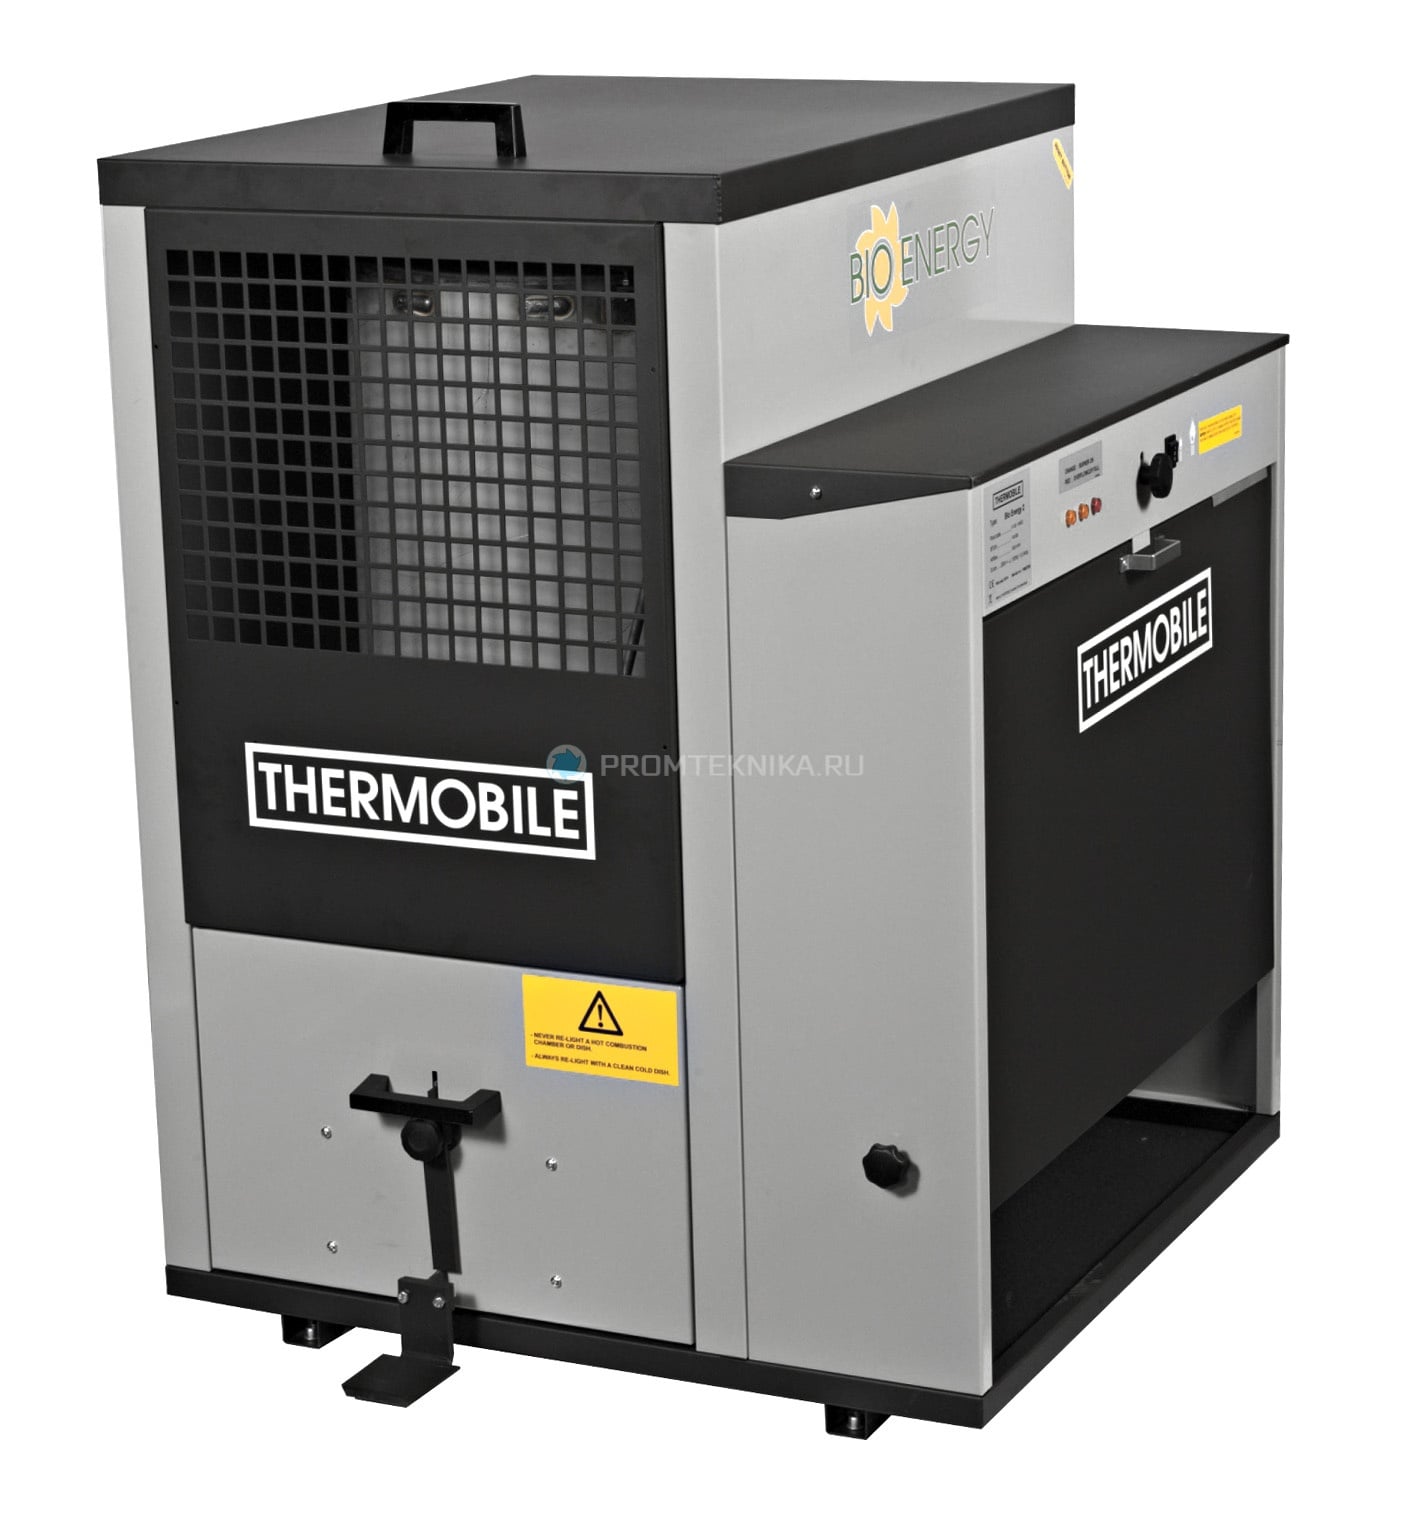 Полуавтоматическая печь Thermobile BioEnergy 2